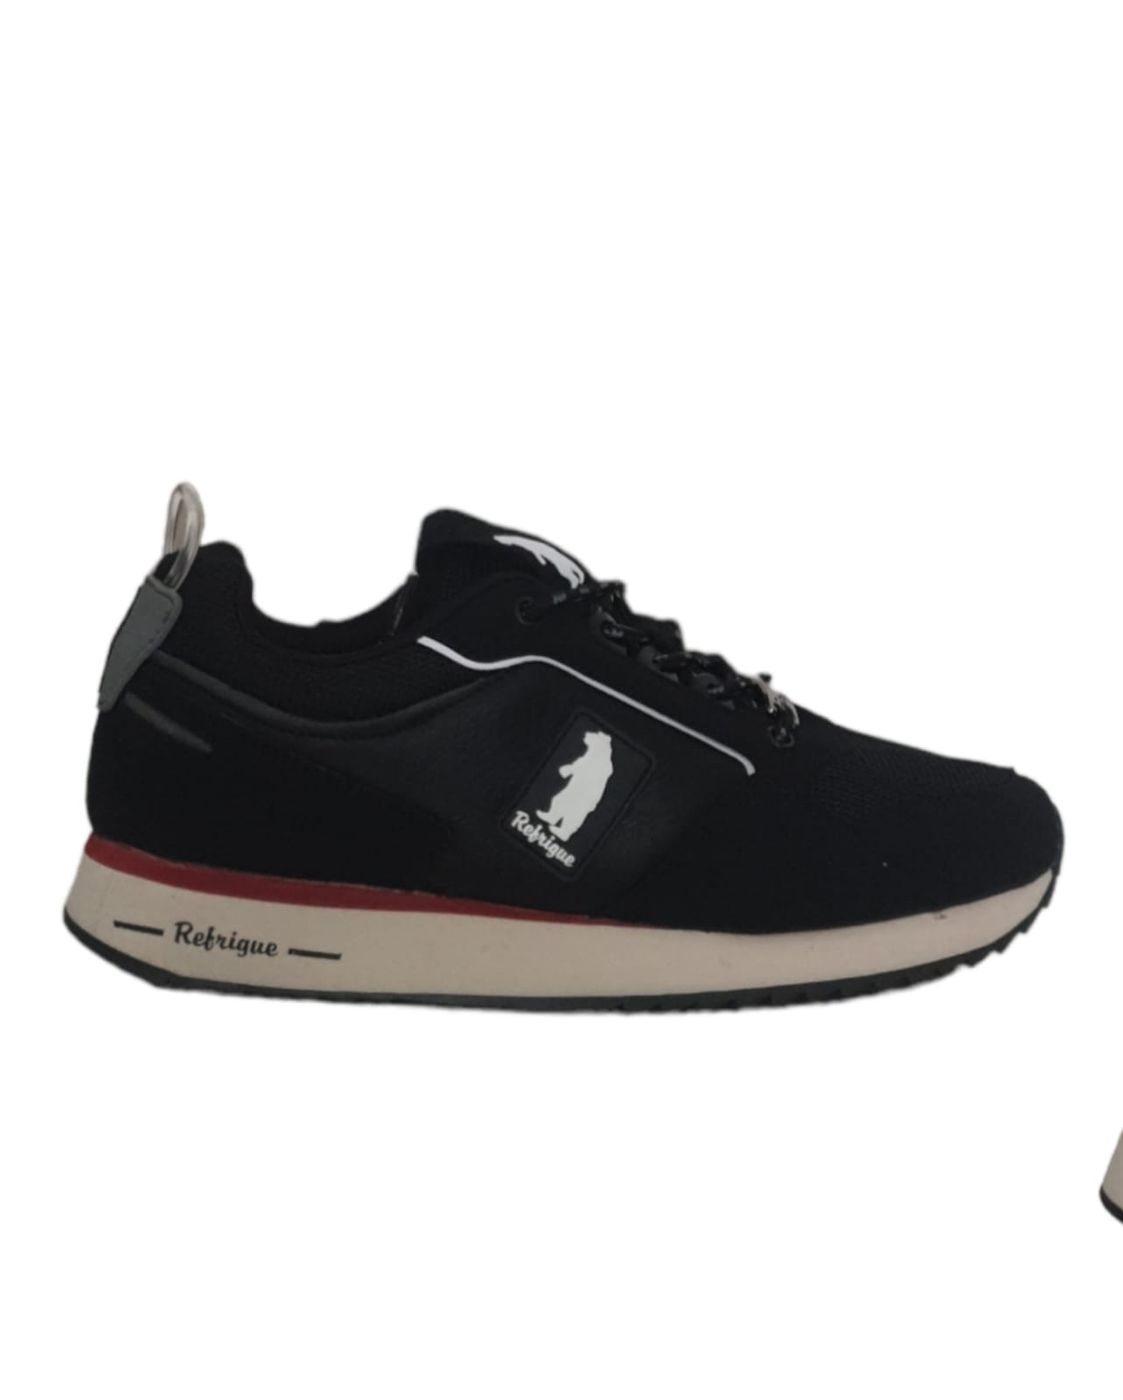 Sneaker Refrigue urban style con suola in Memory Foam per il massimo del confort Refrigue walkingon